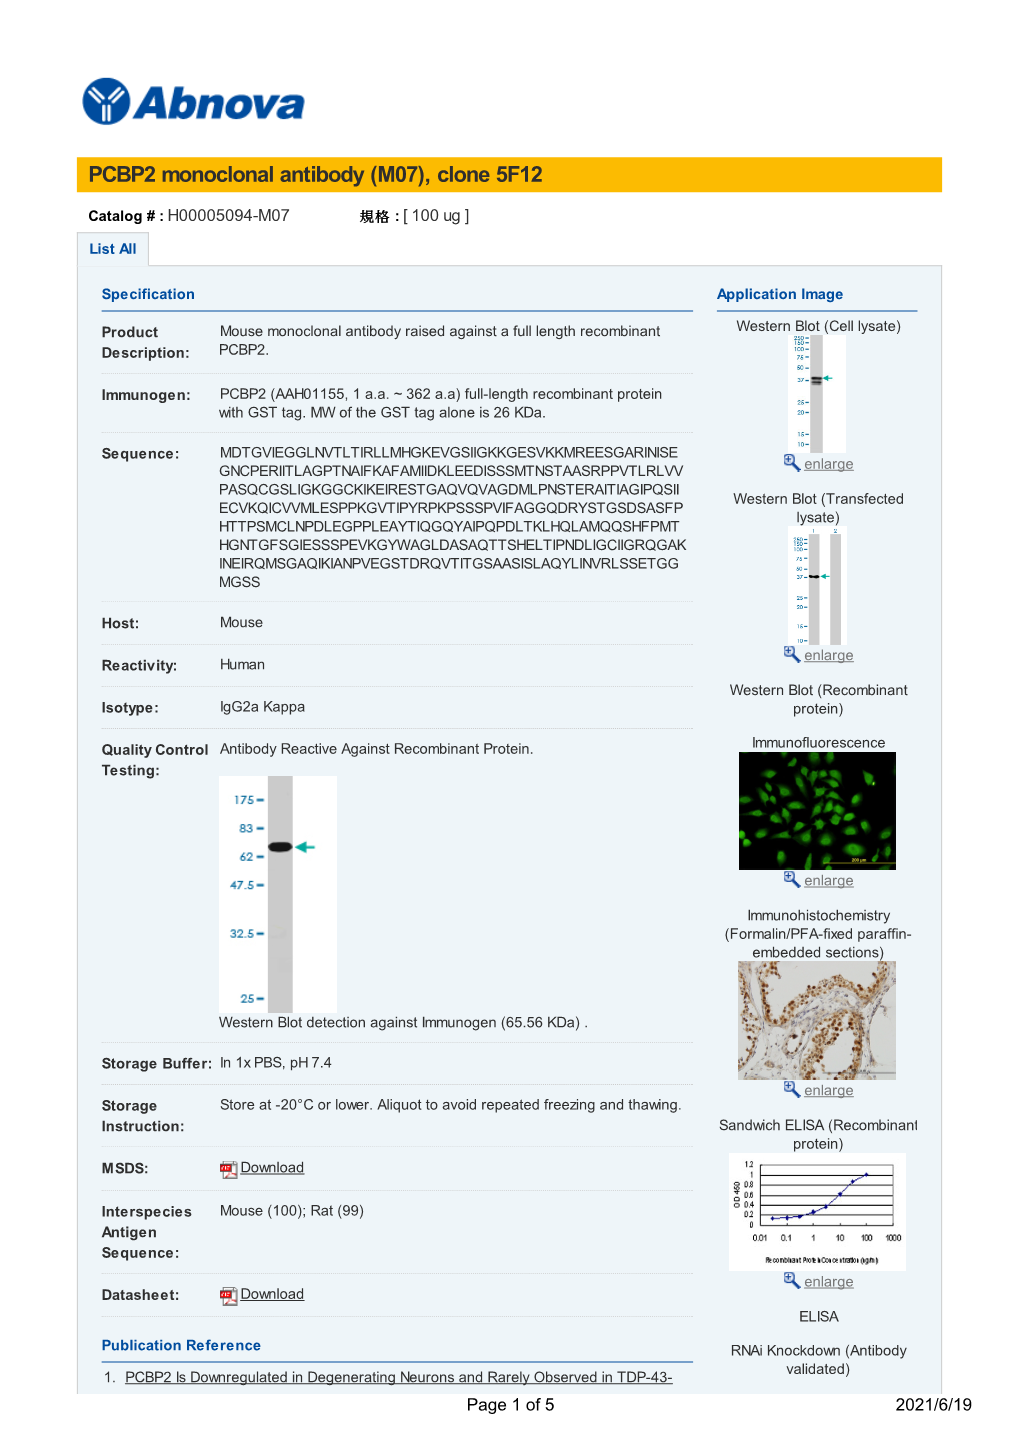 PCBP2 Monoclonal Antibody (M07), Clone 5F12